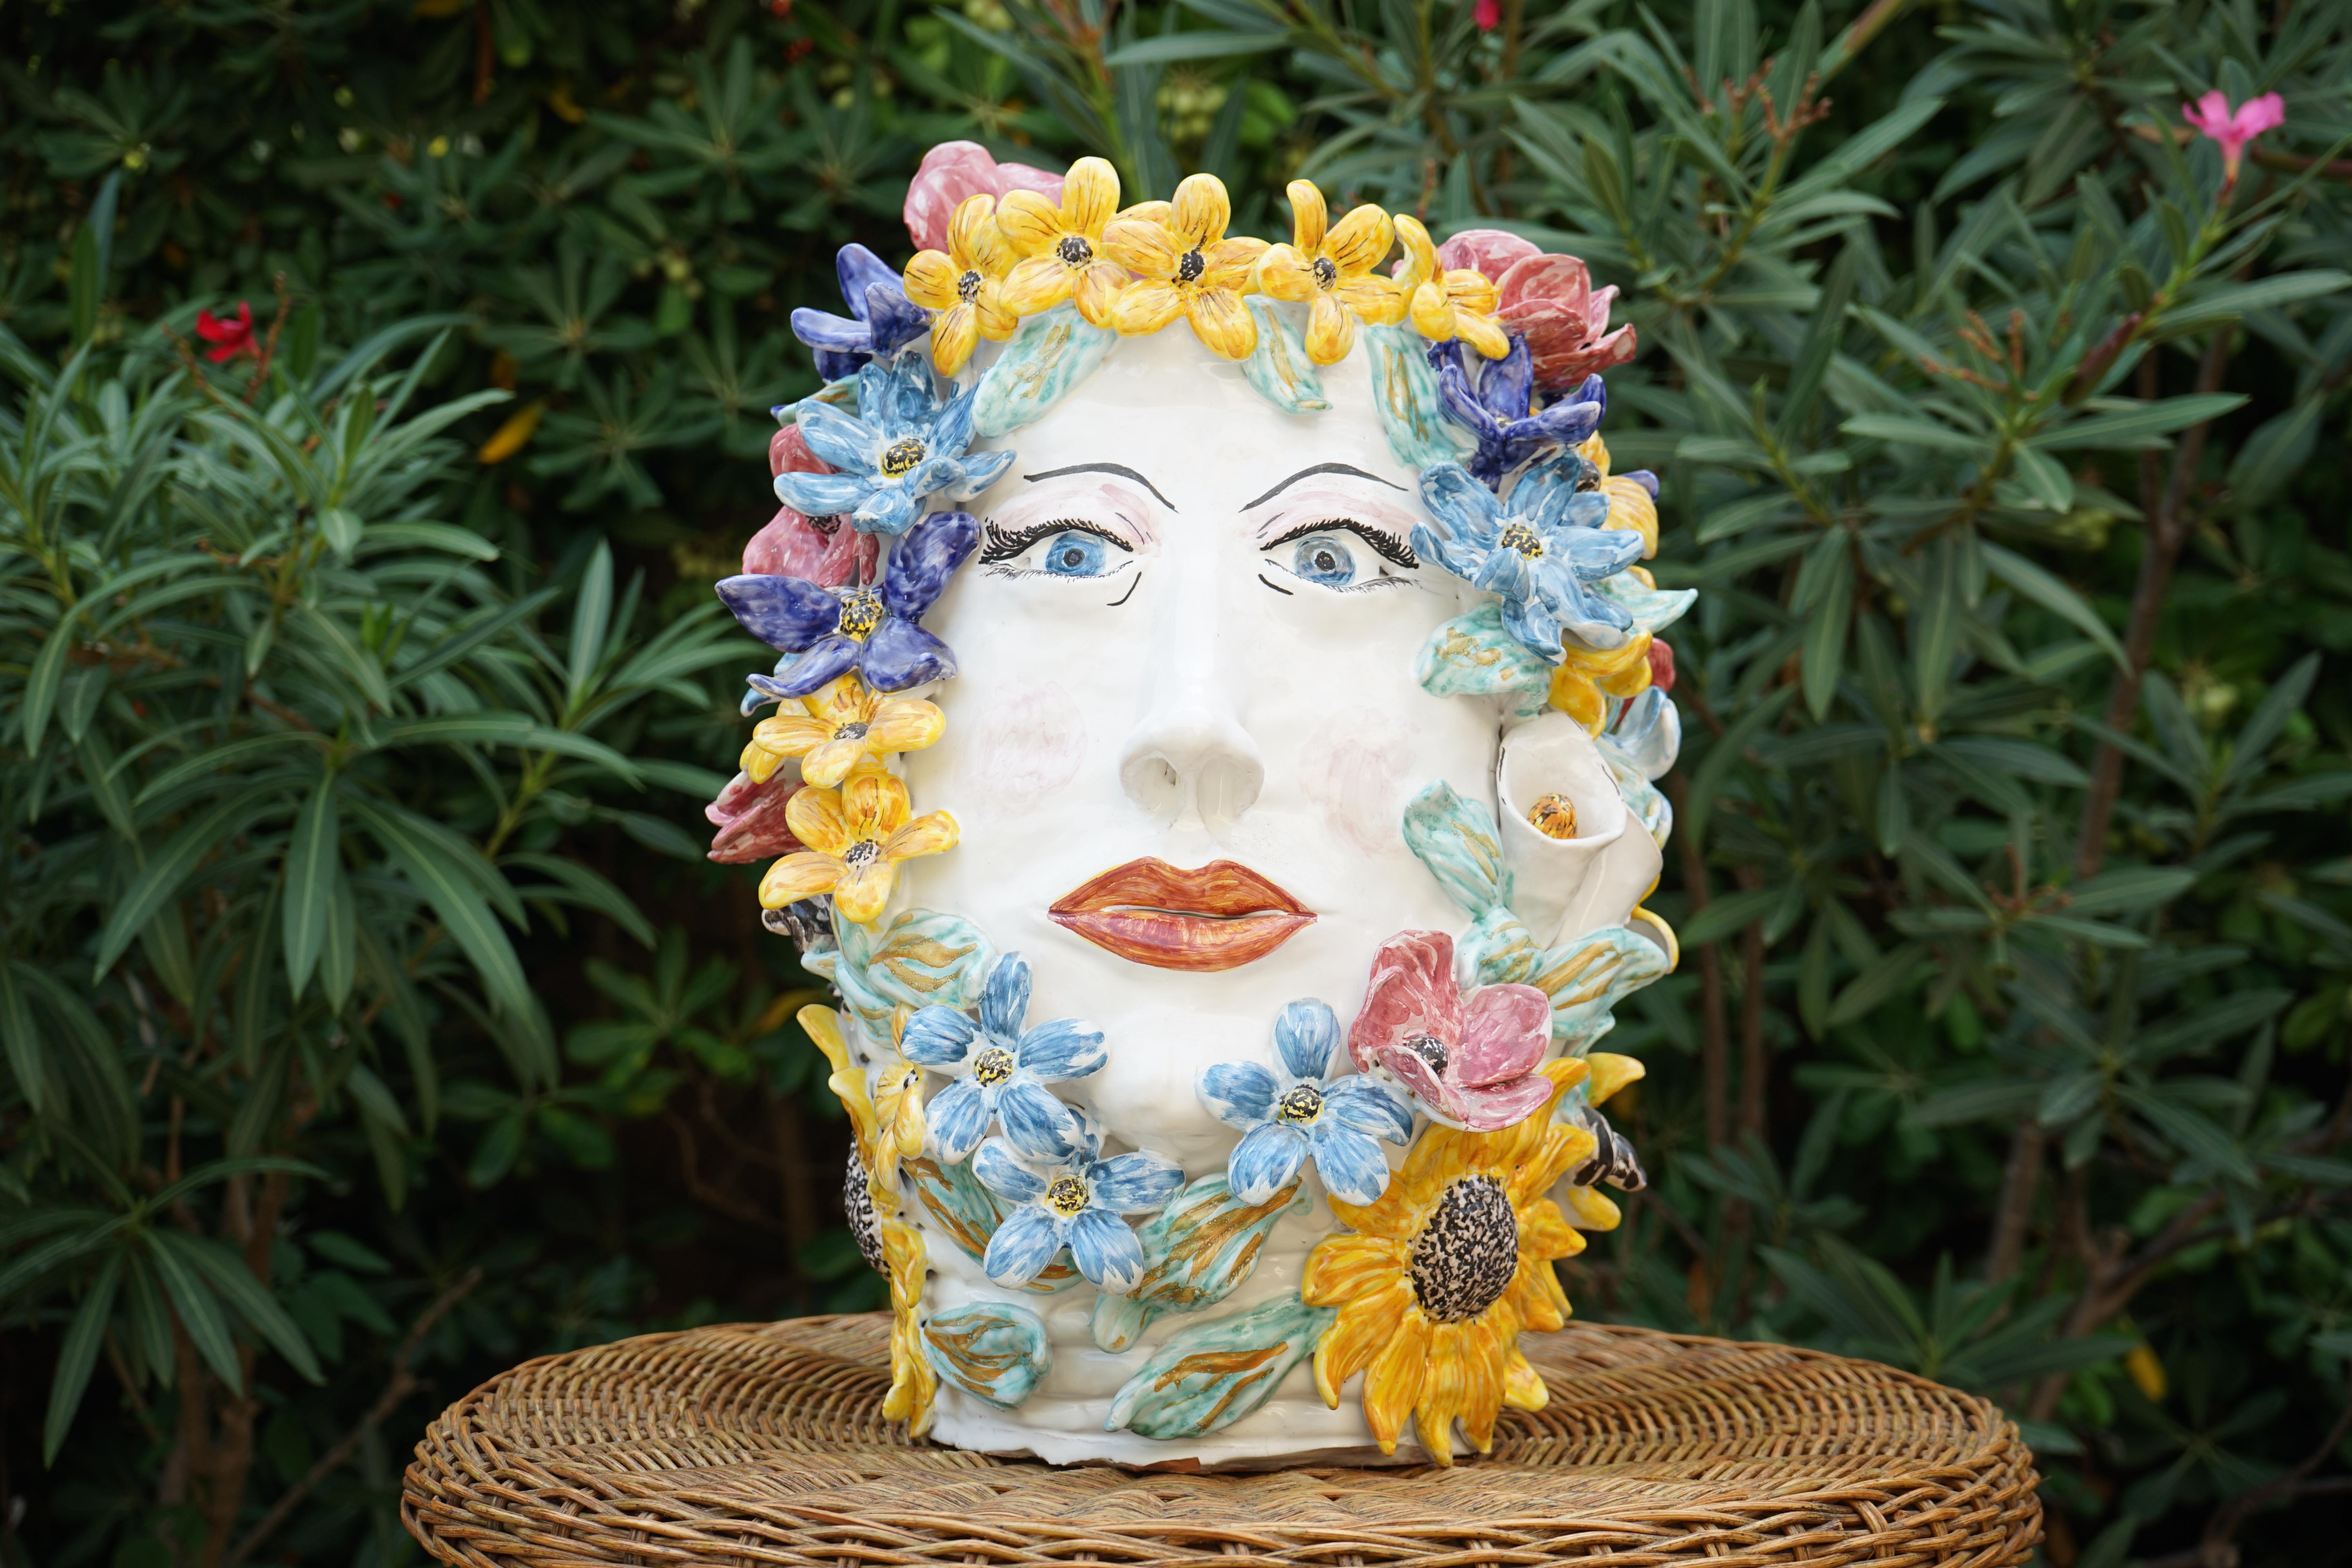 Große Skulptur Vase aus Keramik, vollständig handgefertigt, ein einzigartiges Beispiel für Superego Editions produziert.
Hergestellt in Caltagirone, Sizilien, Italien. Anthropomorphe Vase.

Biographie:
Superego editions wurde 2006 gegründet und